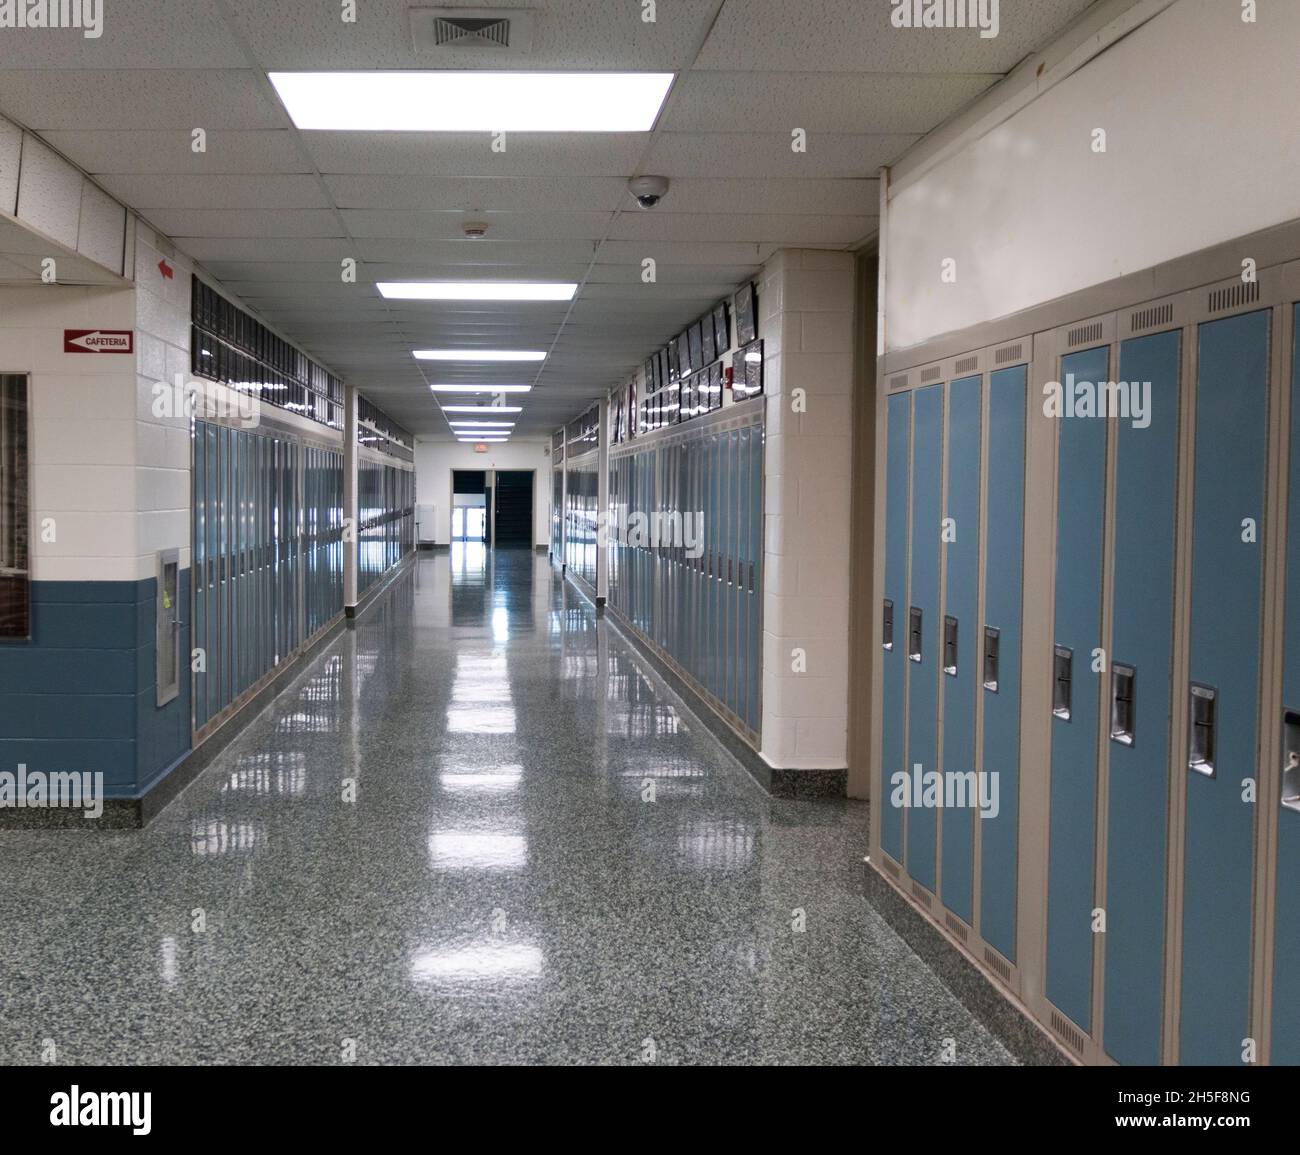 Dentro de y American High School mirando hacia abajo un pasillo alineado con armarios. Foto de stock